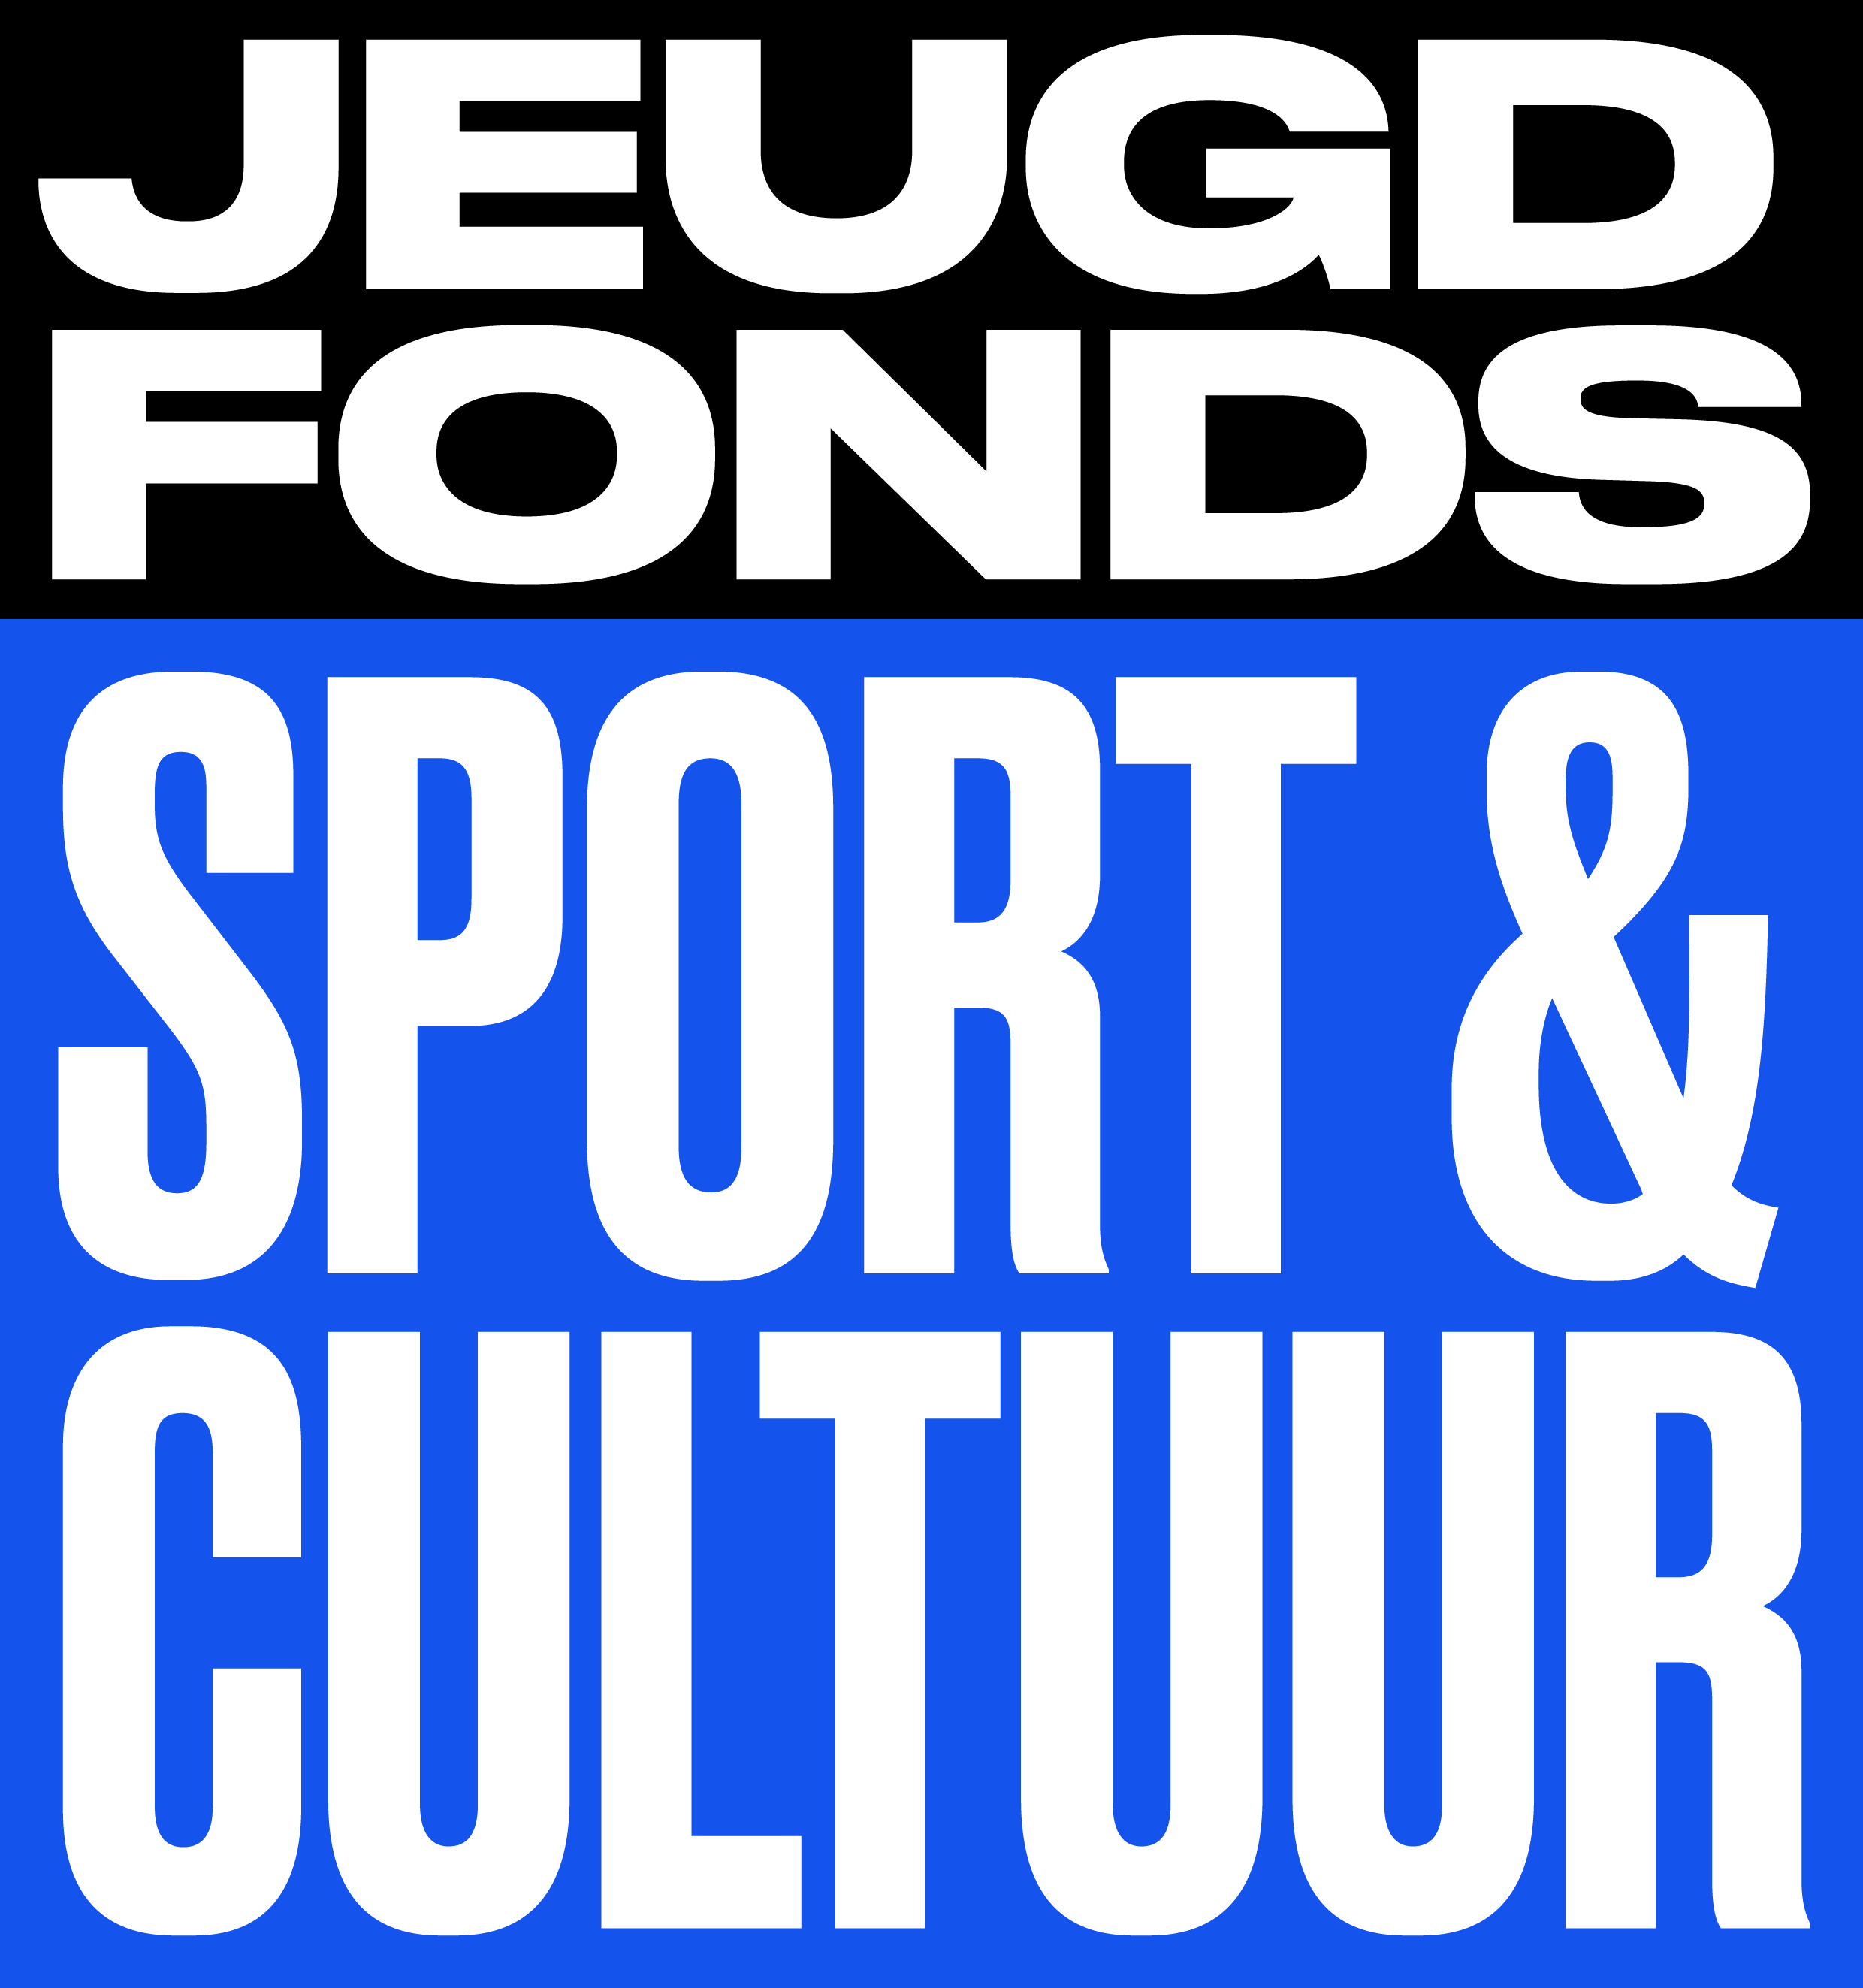 Jeugdfonds Sport & Cultuur - logo